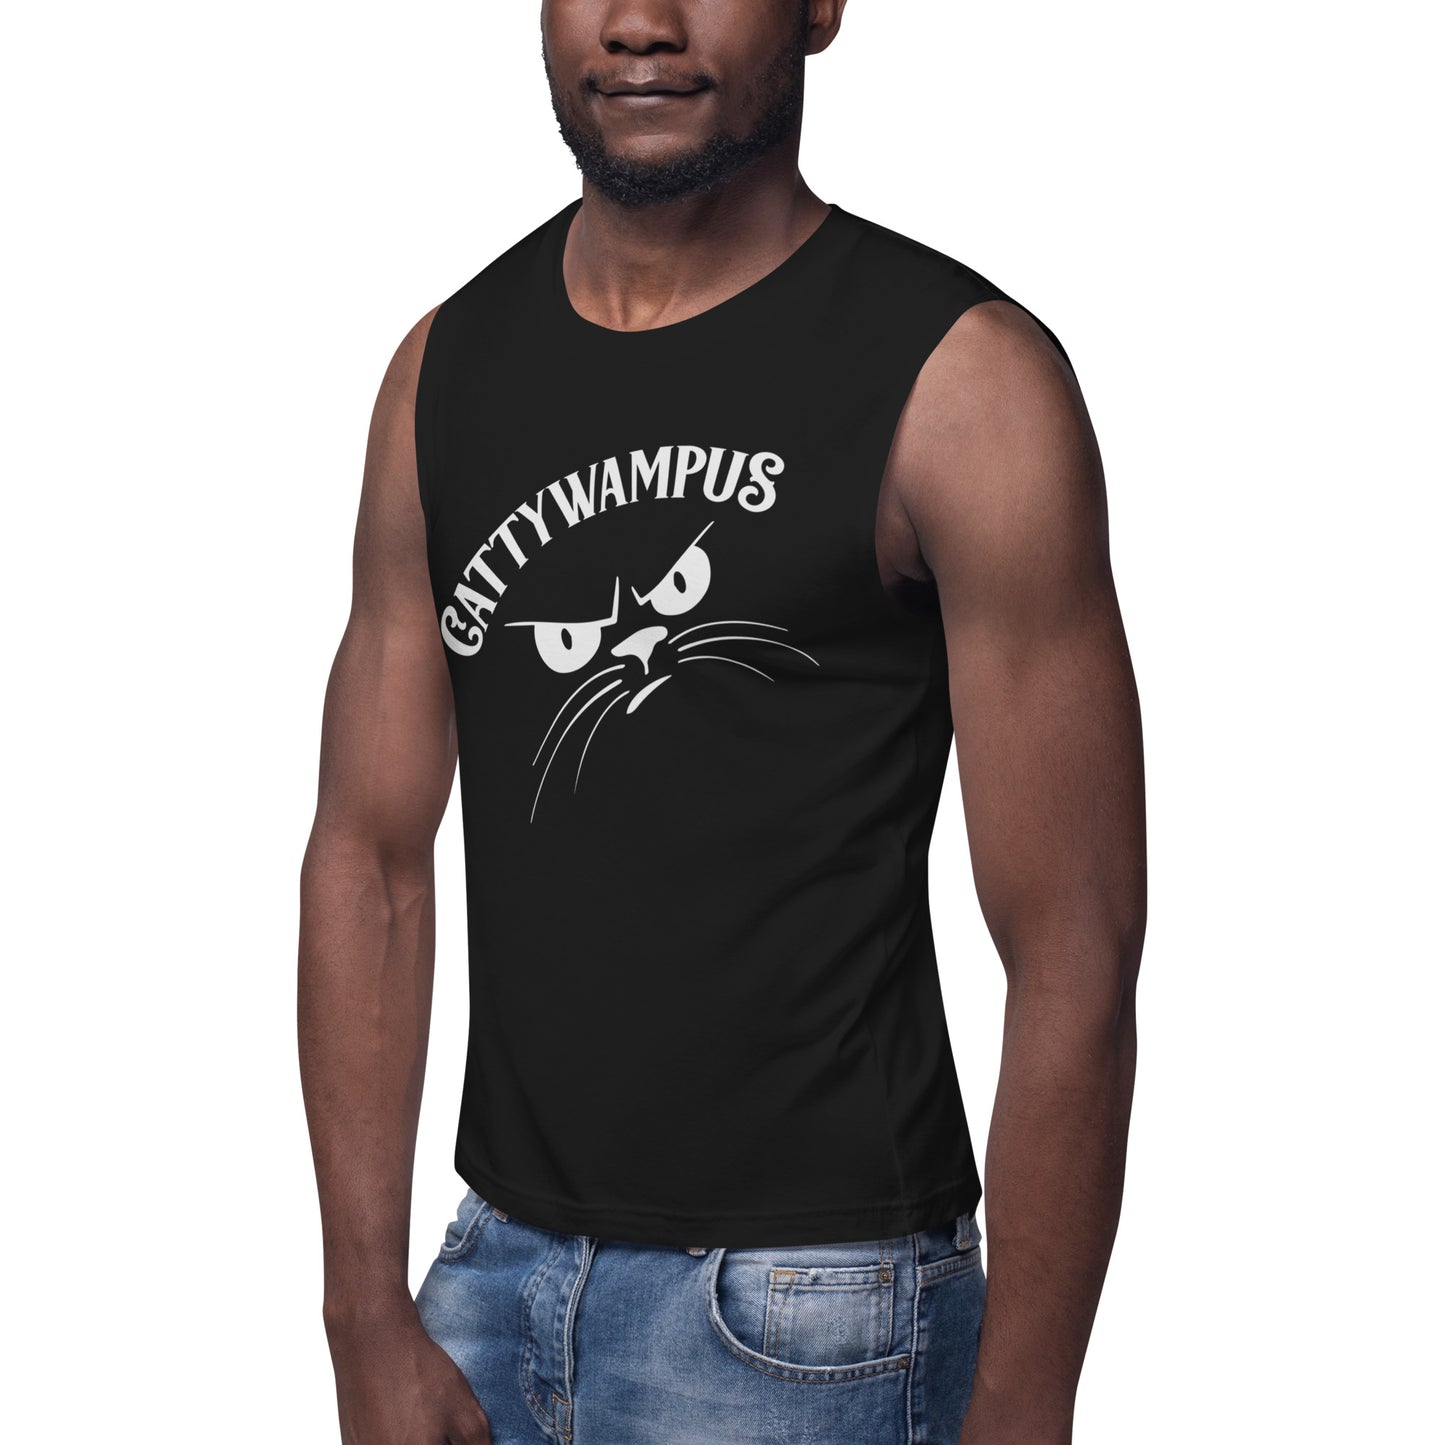 Cattywampus / Unisex Muscle Shirt